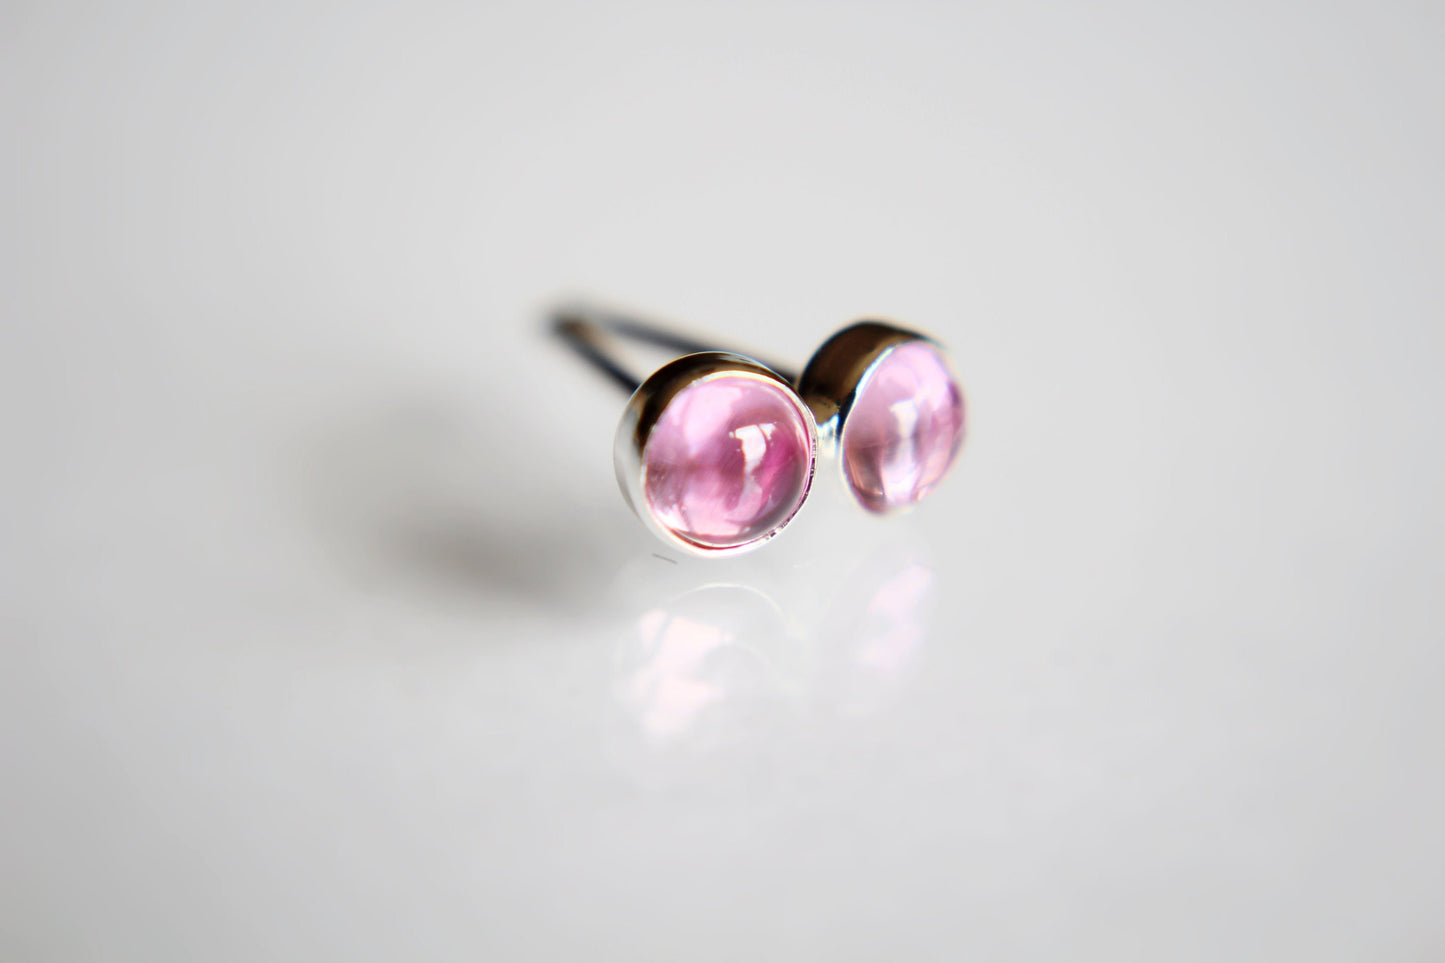 Pink Sapphire Earrings, Gemstone Earrings, Sterling Earrings, Post Earrings, Pink Post Earrings, Small Earrings, Minimalist Earrings, Gift